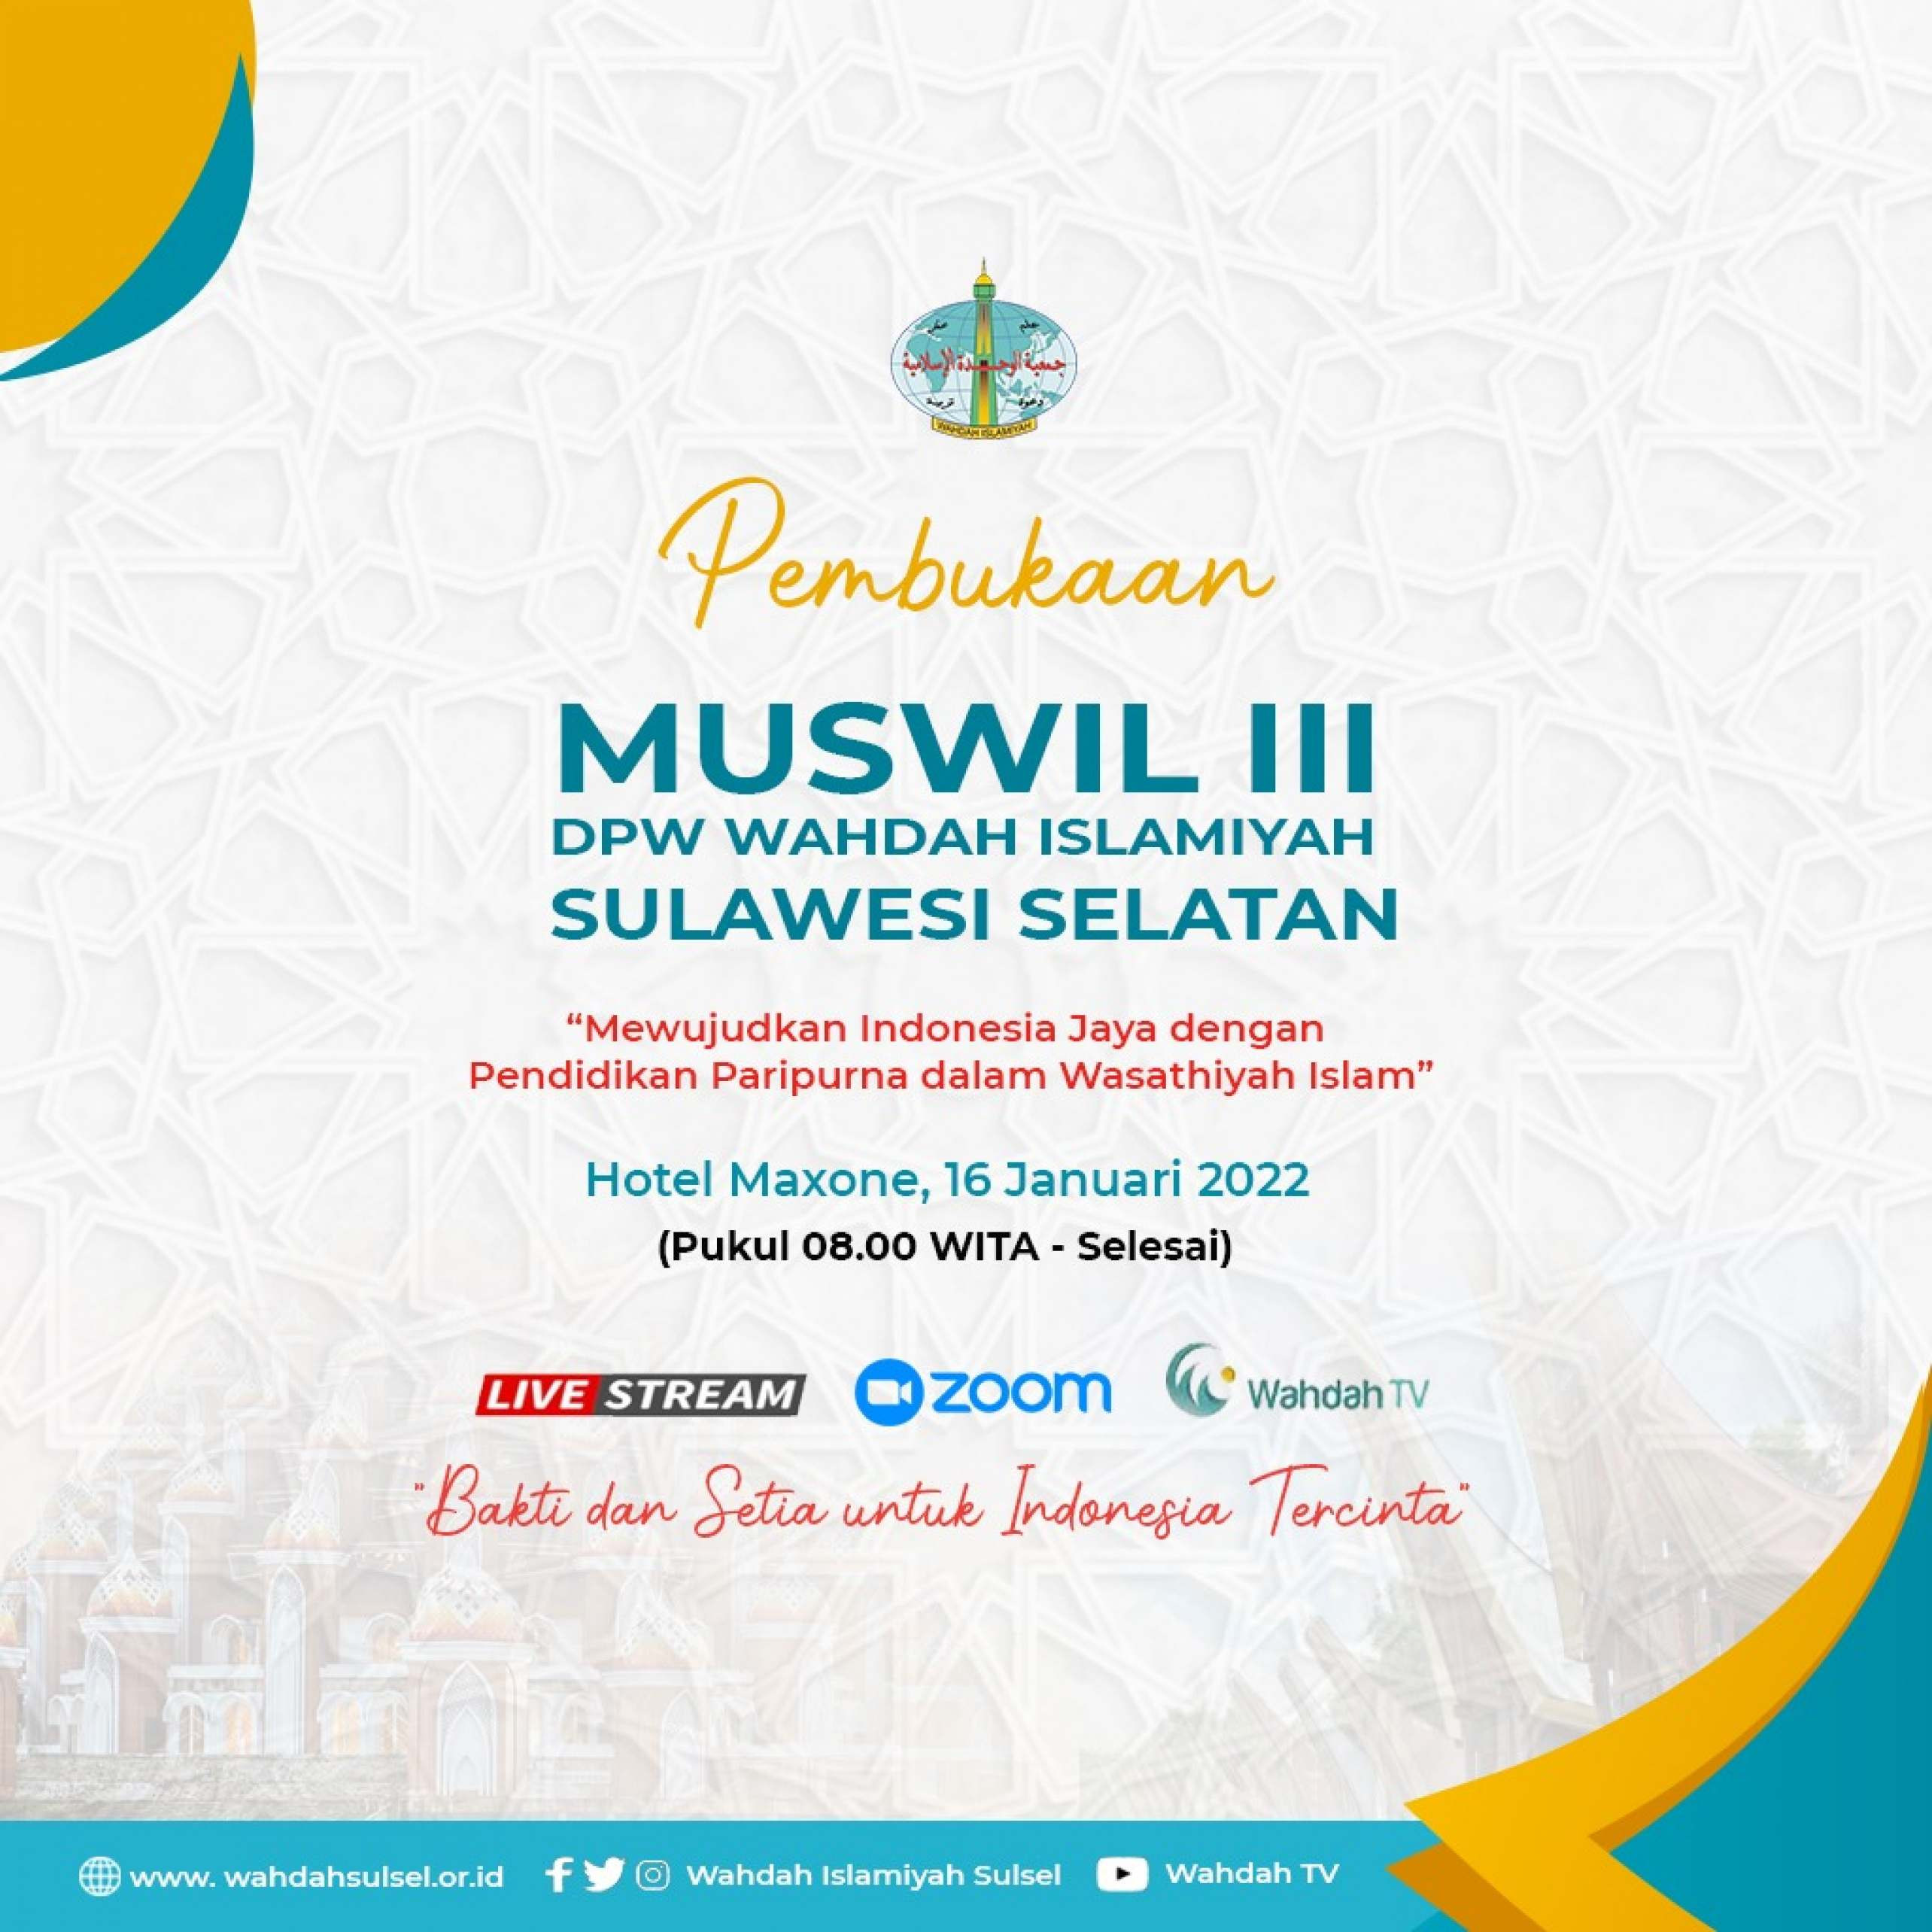 Muswil III DPW Wahdah Islamiyah Sulawesi Selatan